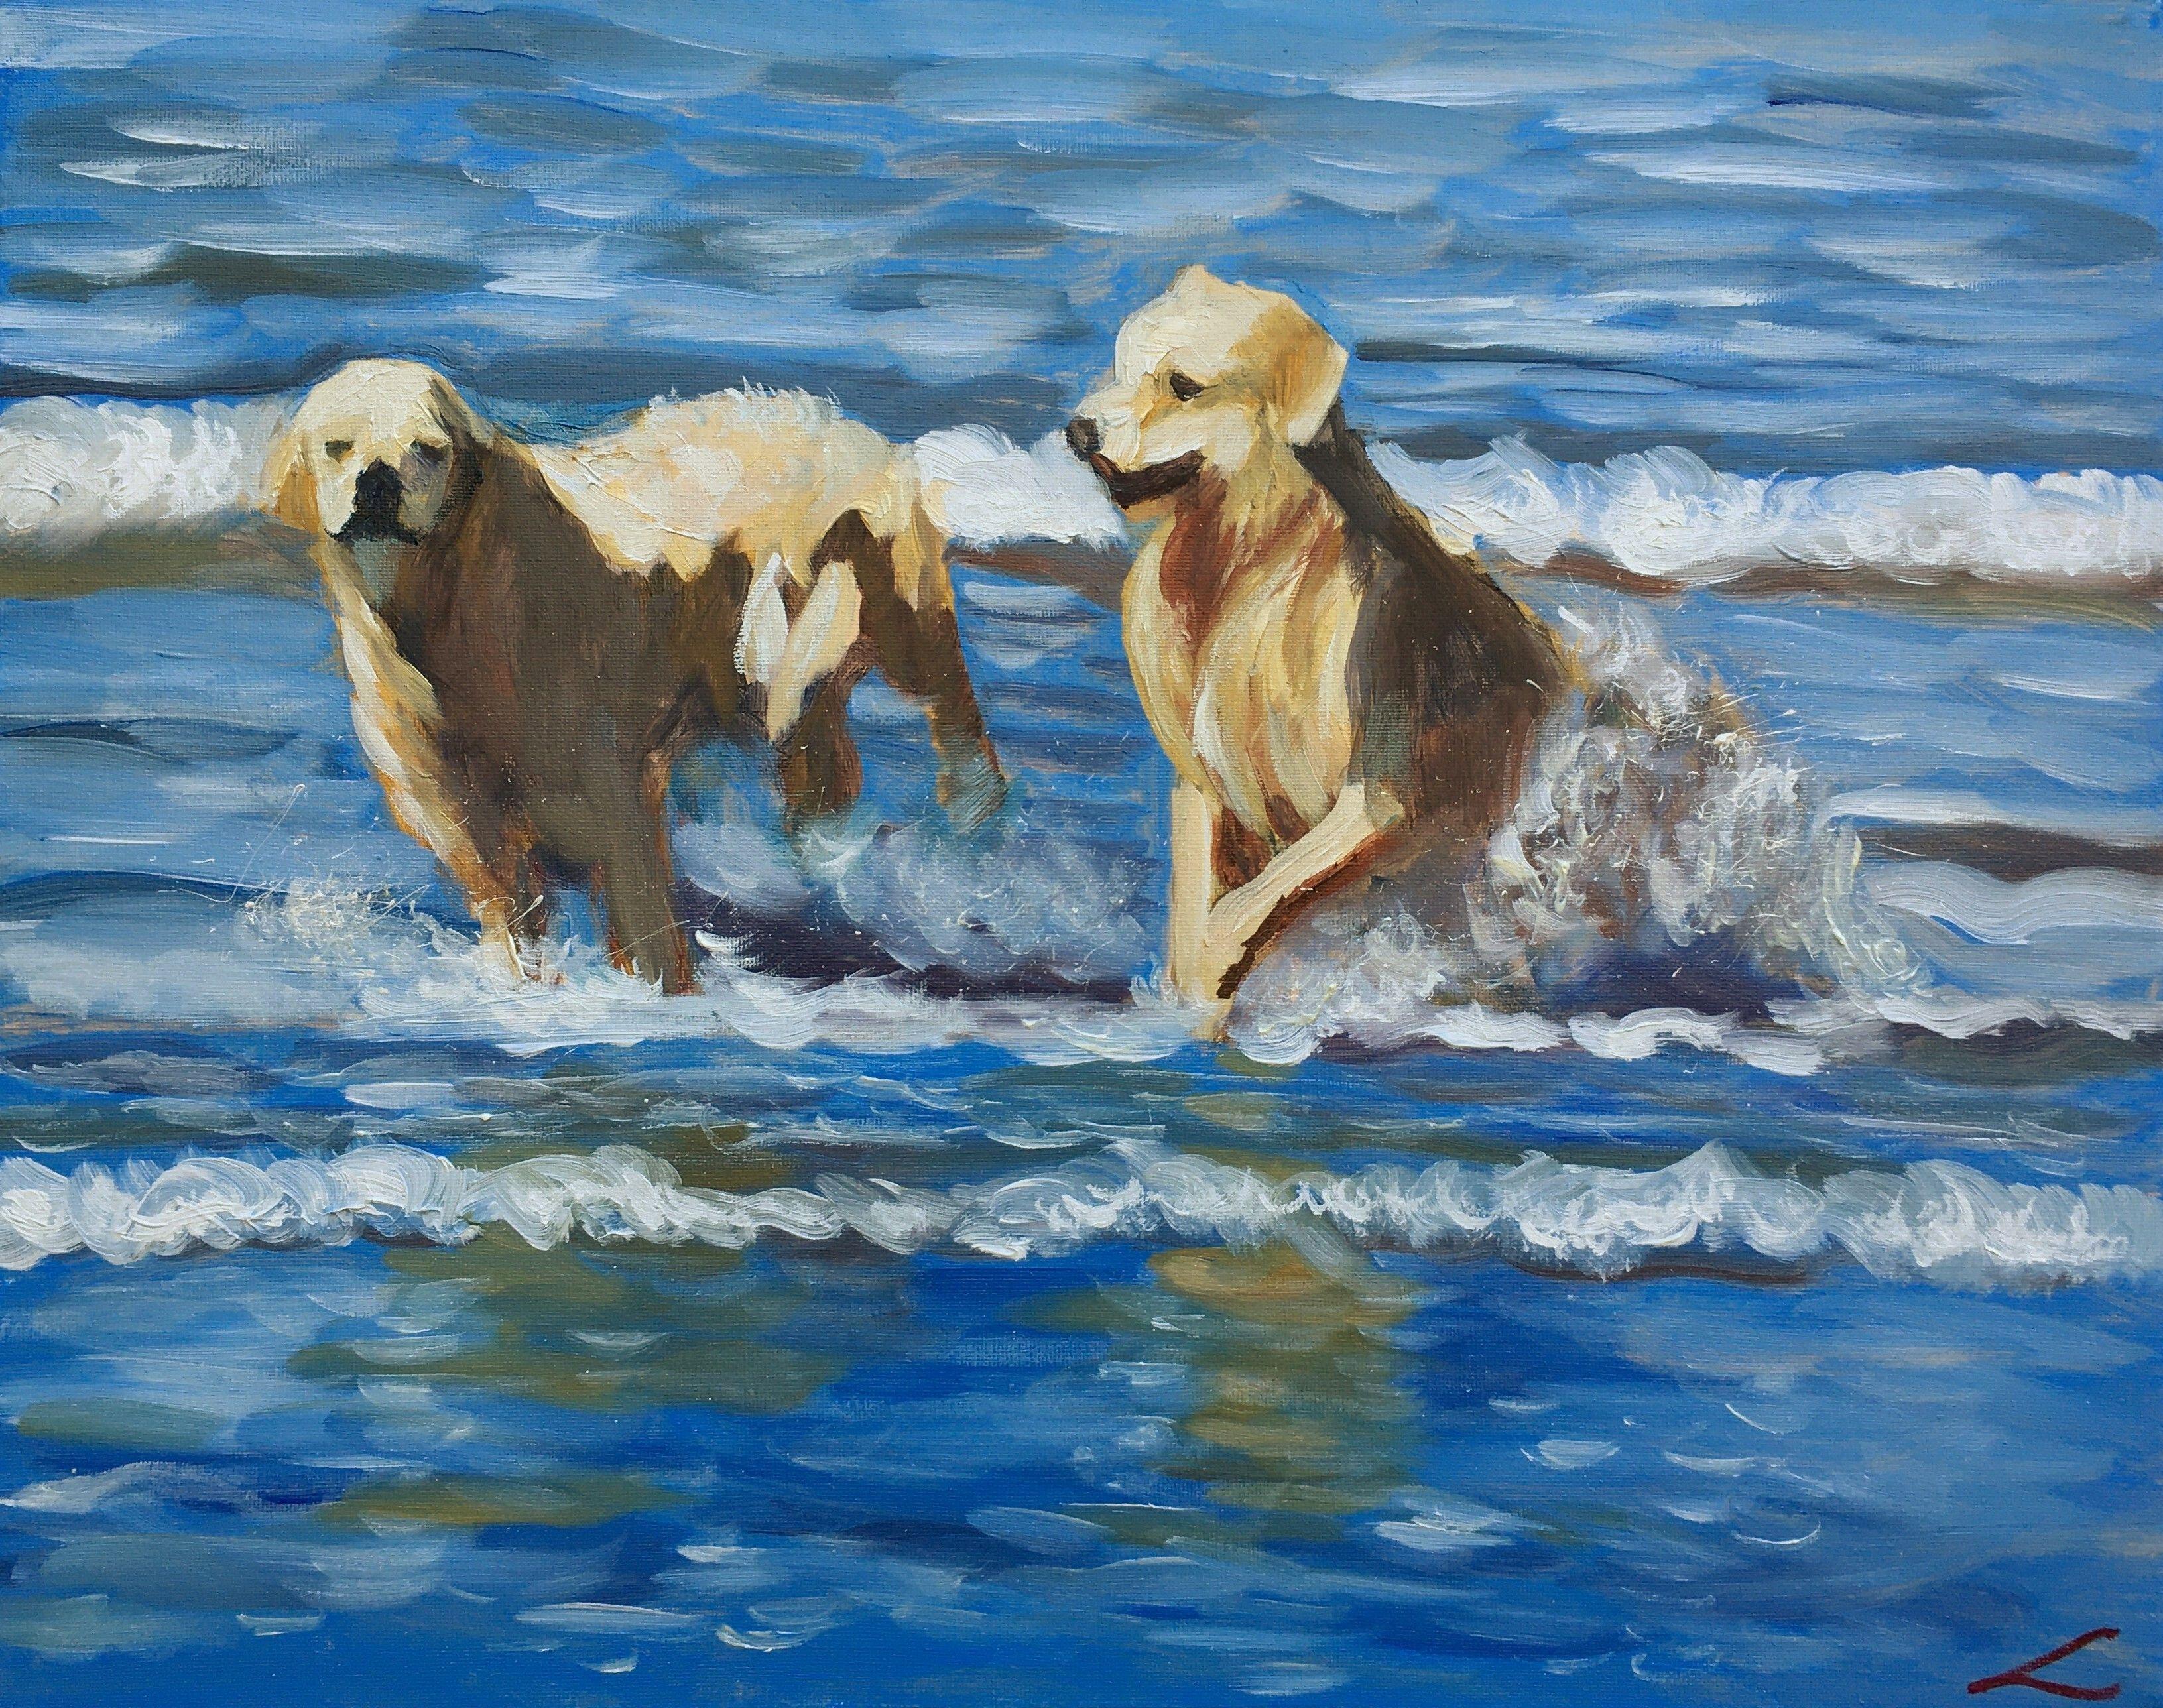 Animal Painting Elena Sokolova - chiens mouillés, peinture, huile sur toile